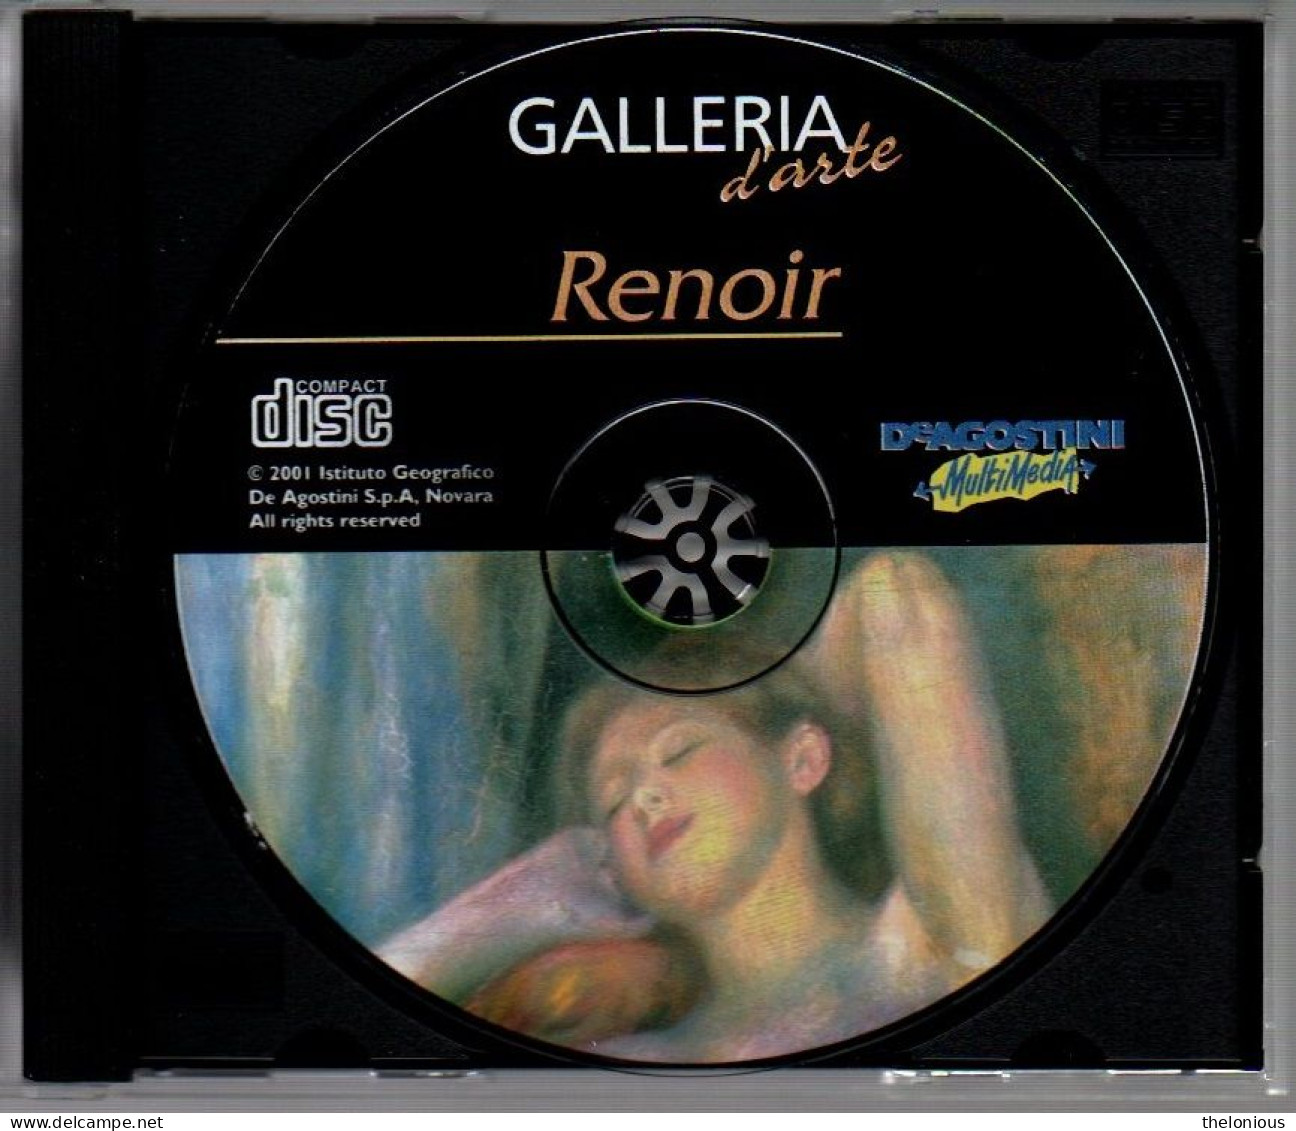 # CD ROM Galleria D'Arte - RENOIR - De Agostini Moltimedia 2001 - Autres Formats